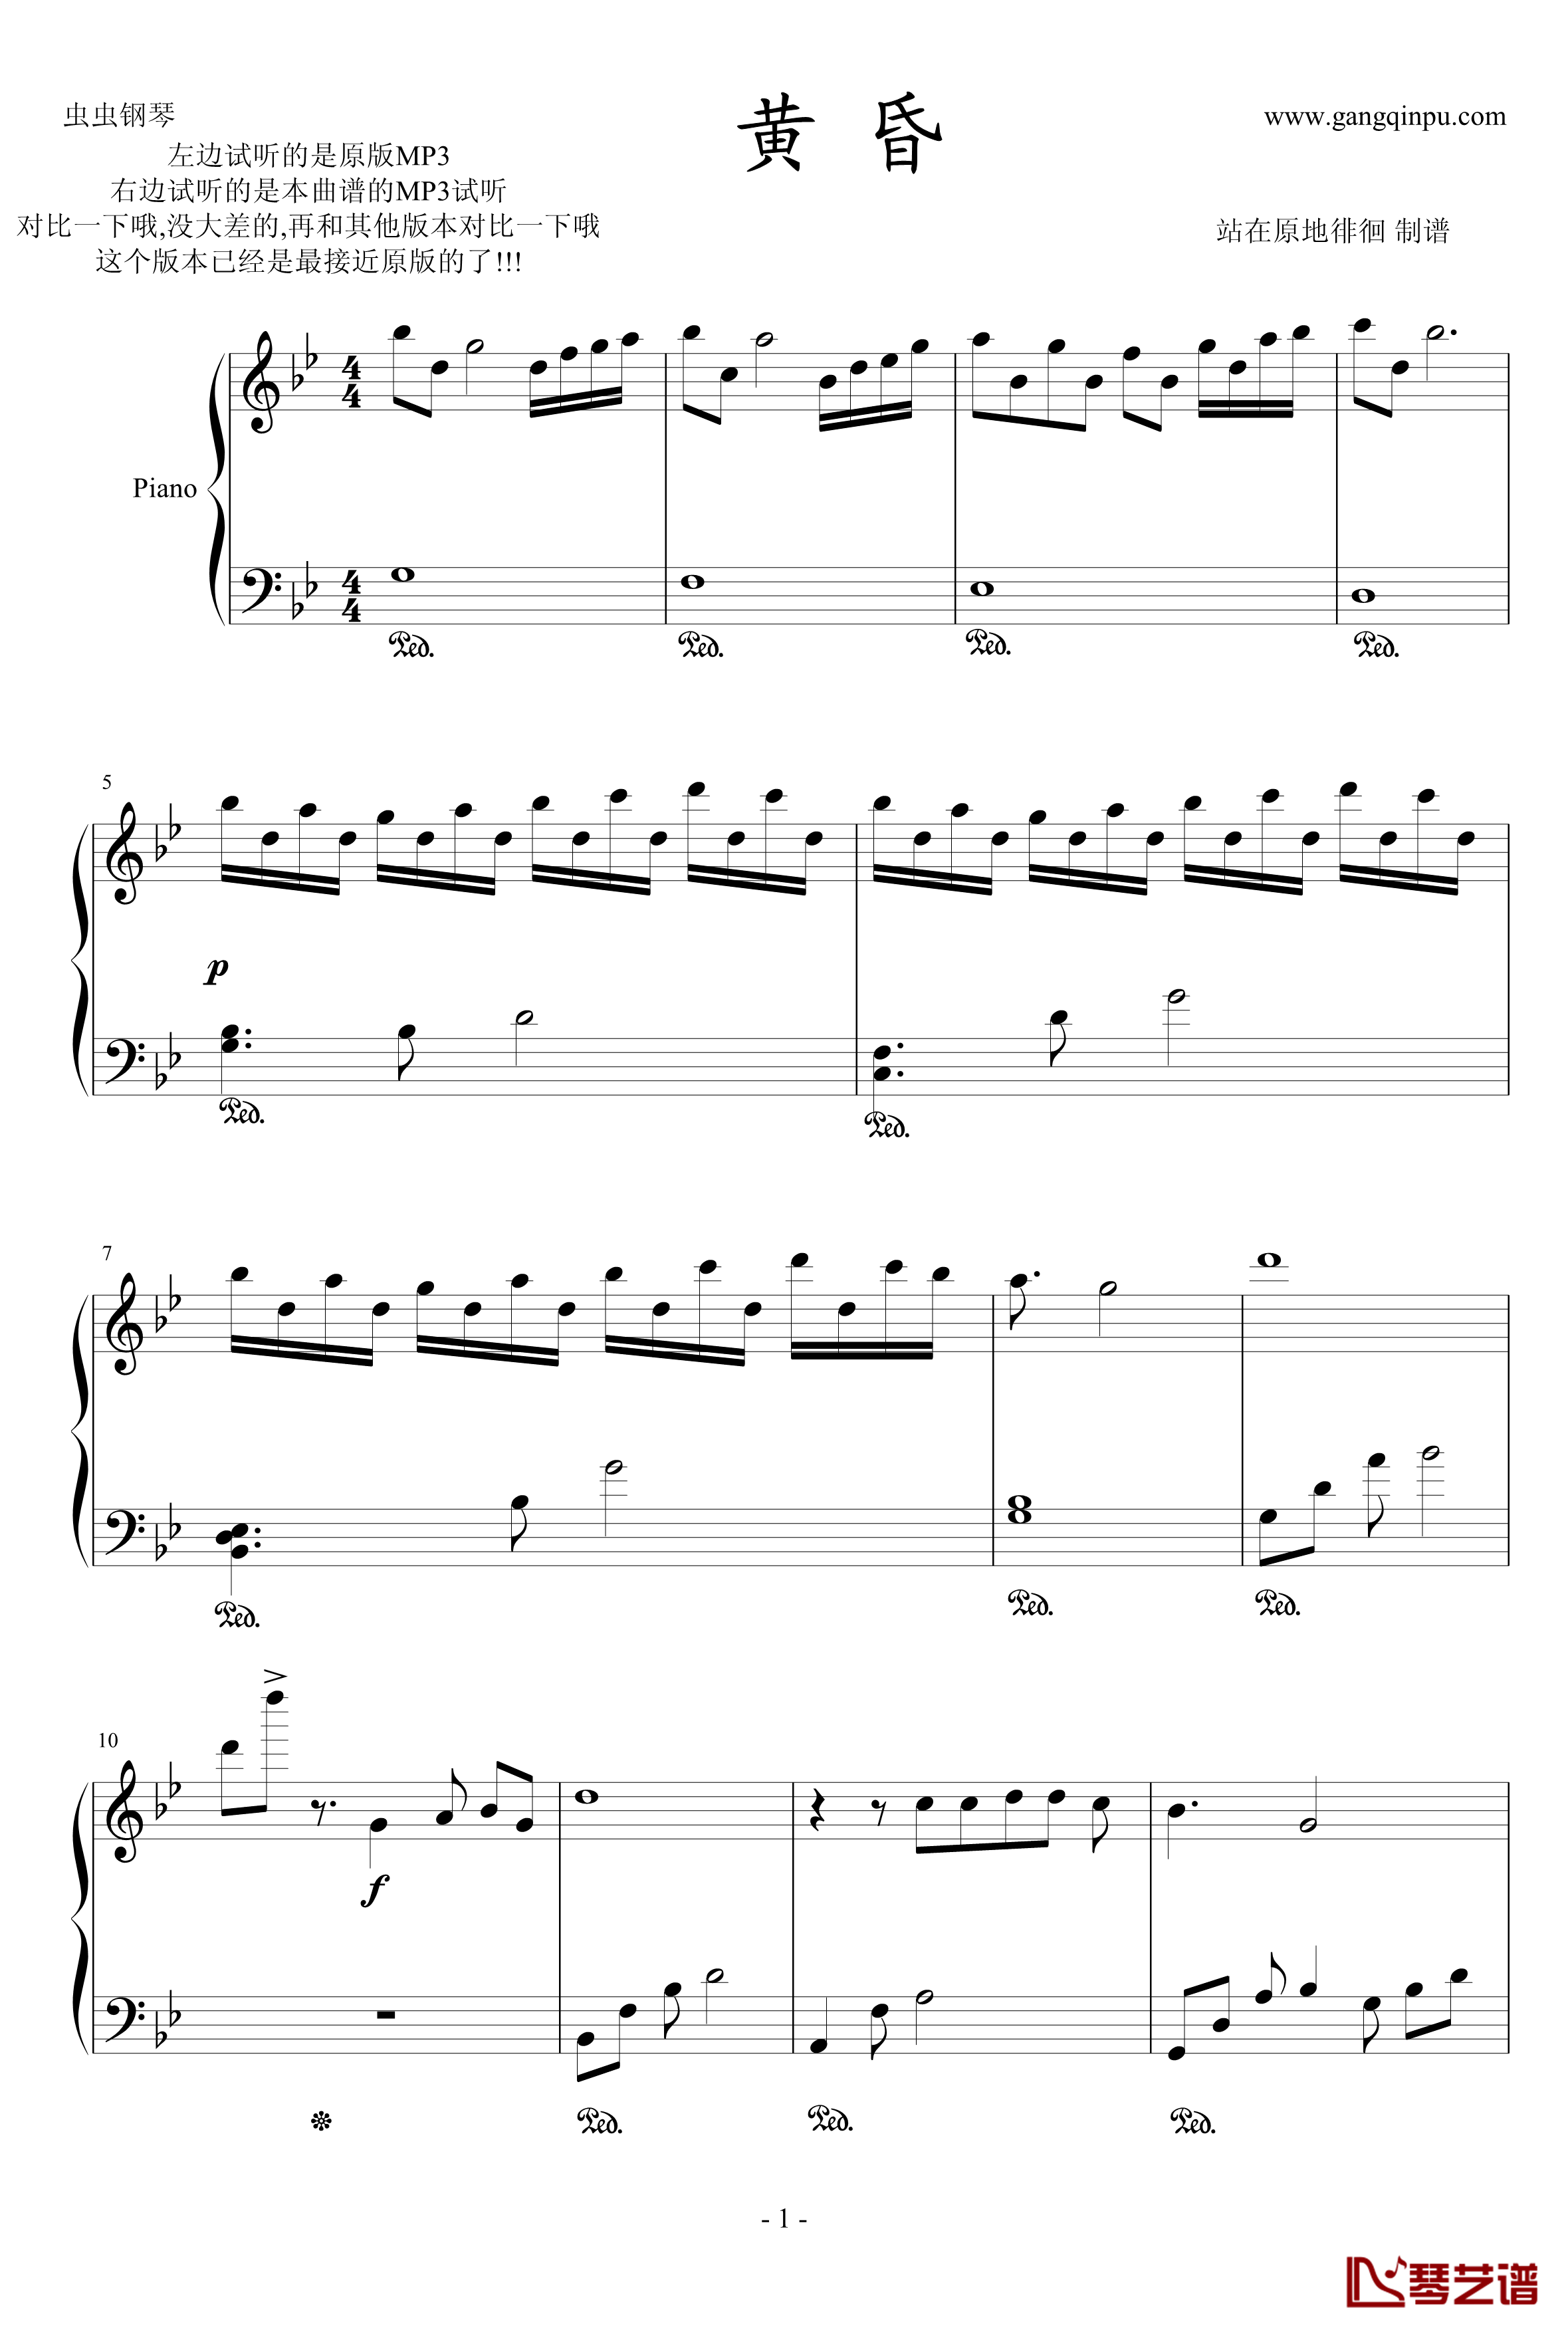 黄昏钢琴谱-近原版-周传雄1